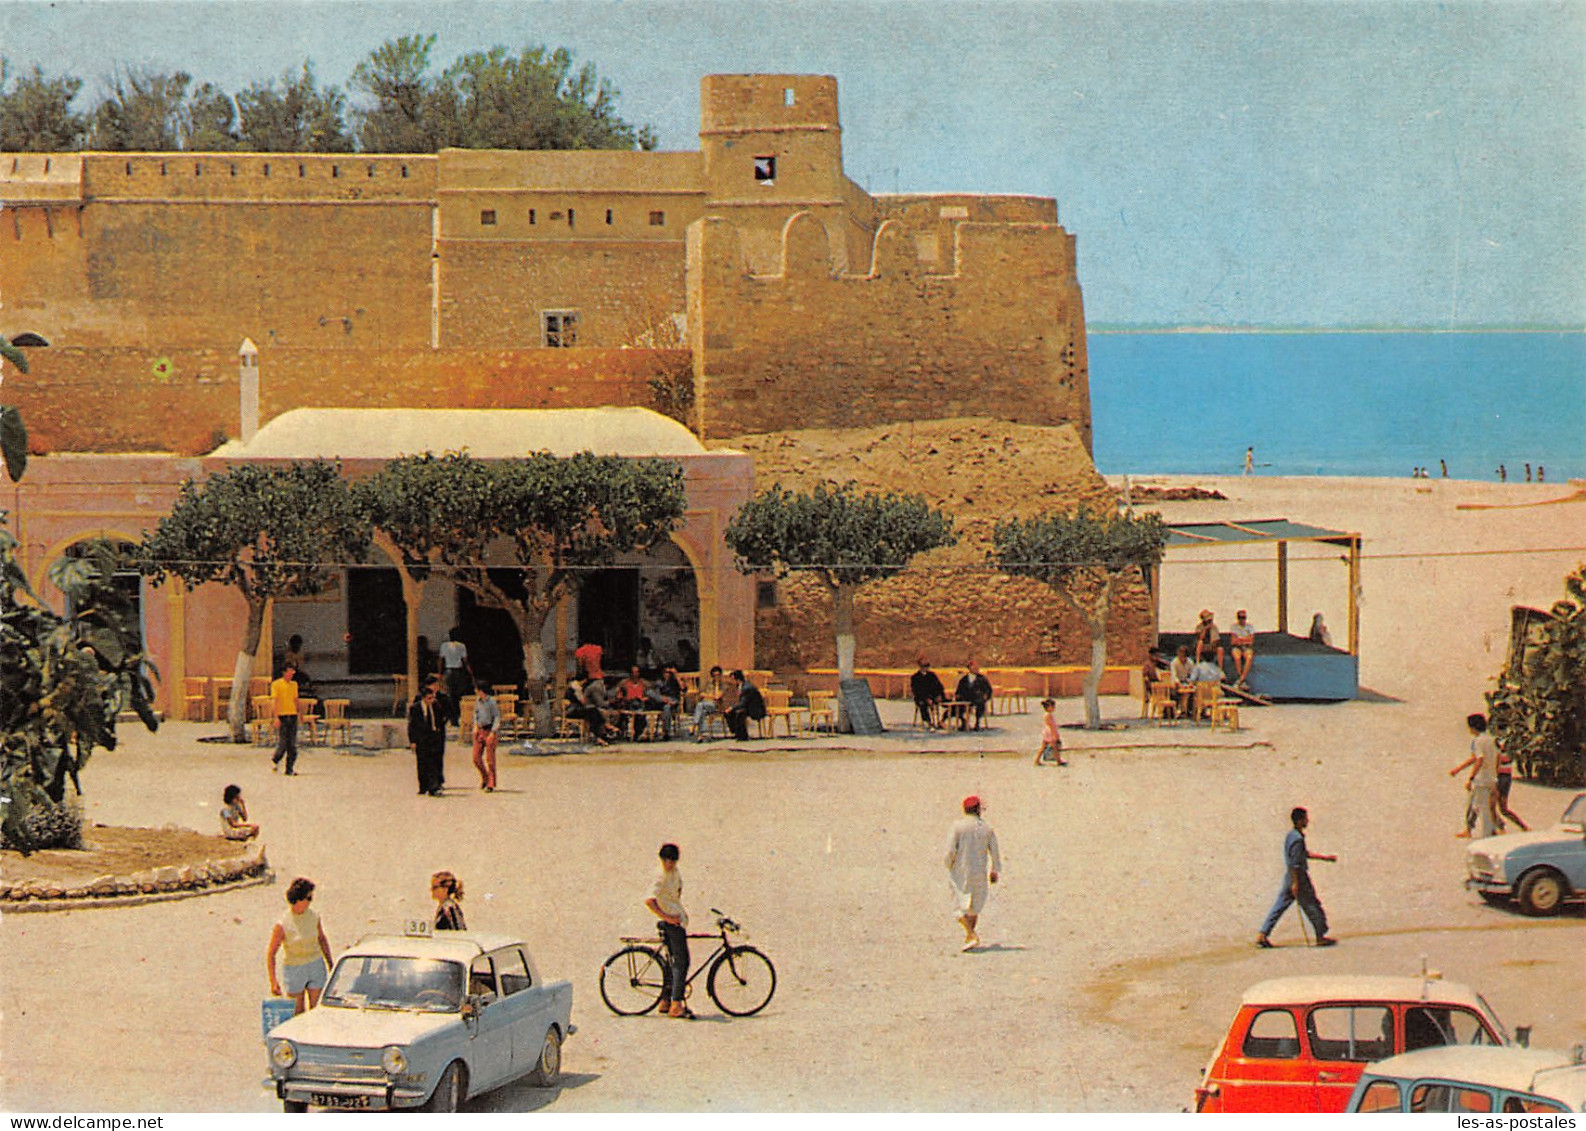 TUNISIE HAMMAMET LA GRANDE PLACE - Tunisia